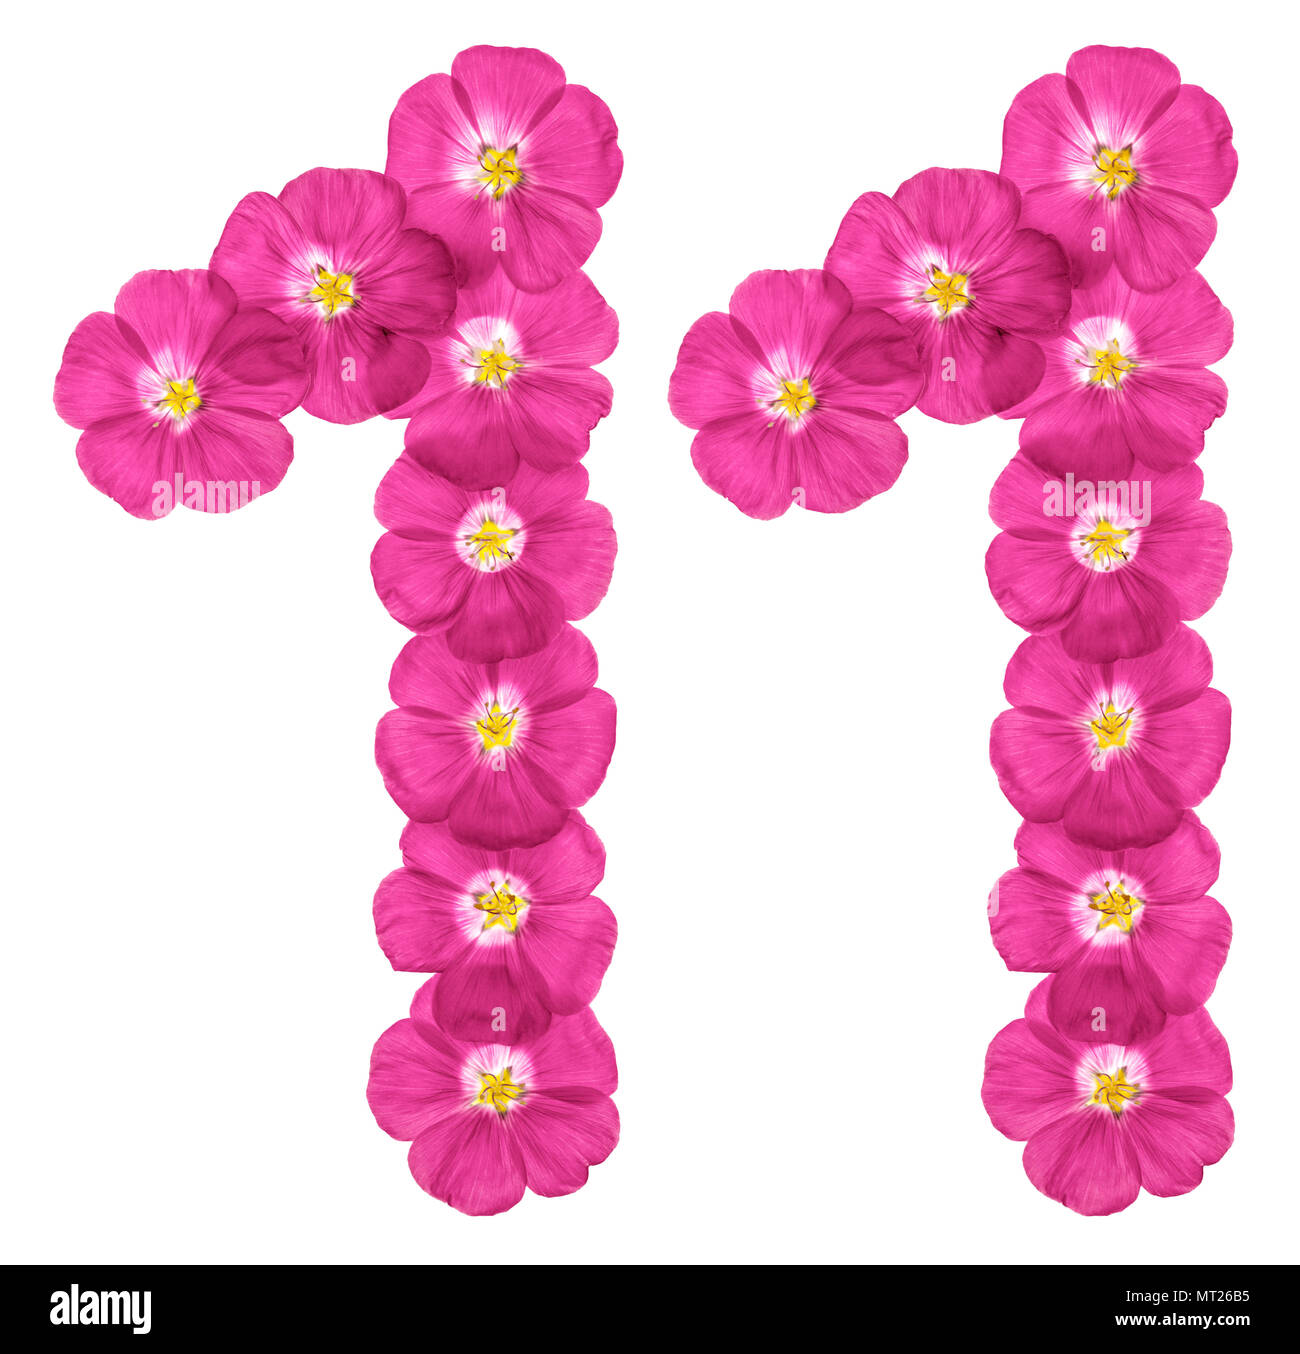 Numero arabo 11, undici, da fiori di colore rosa del lino, isolato su sfondo bianco Foto Stock